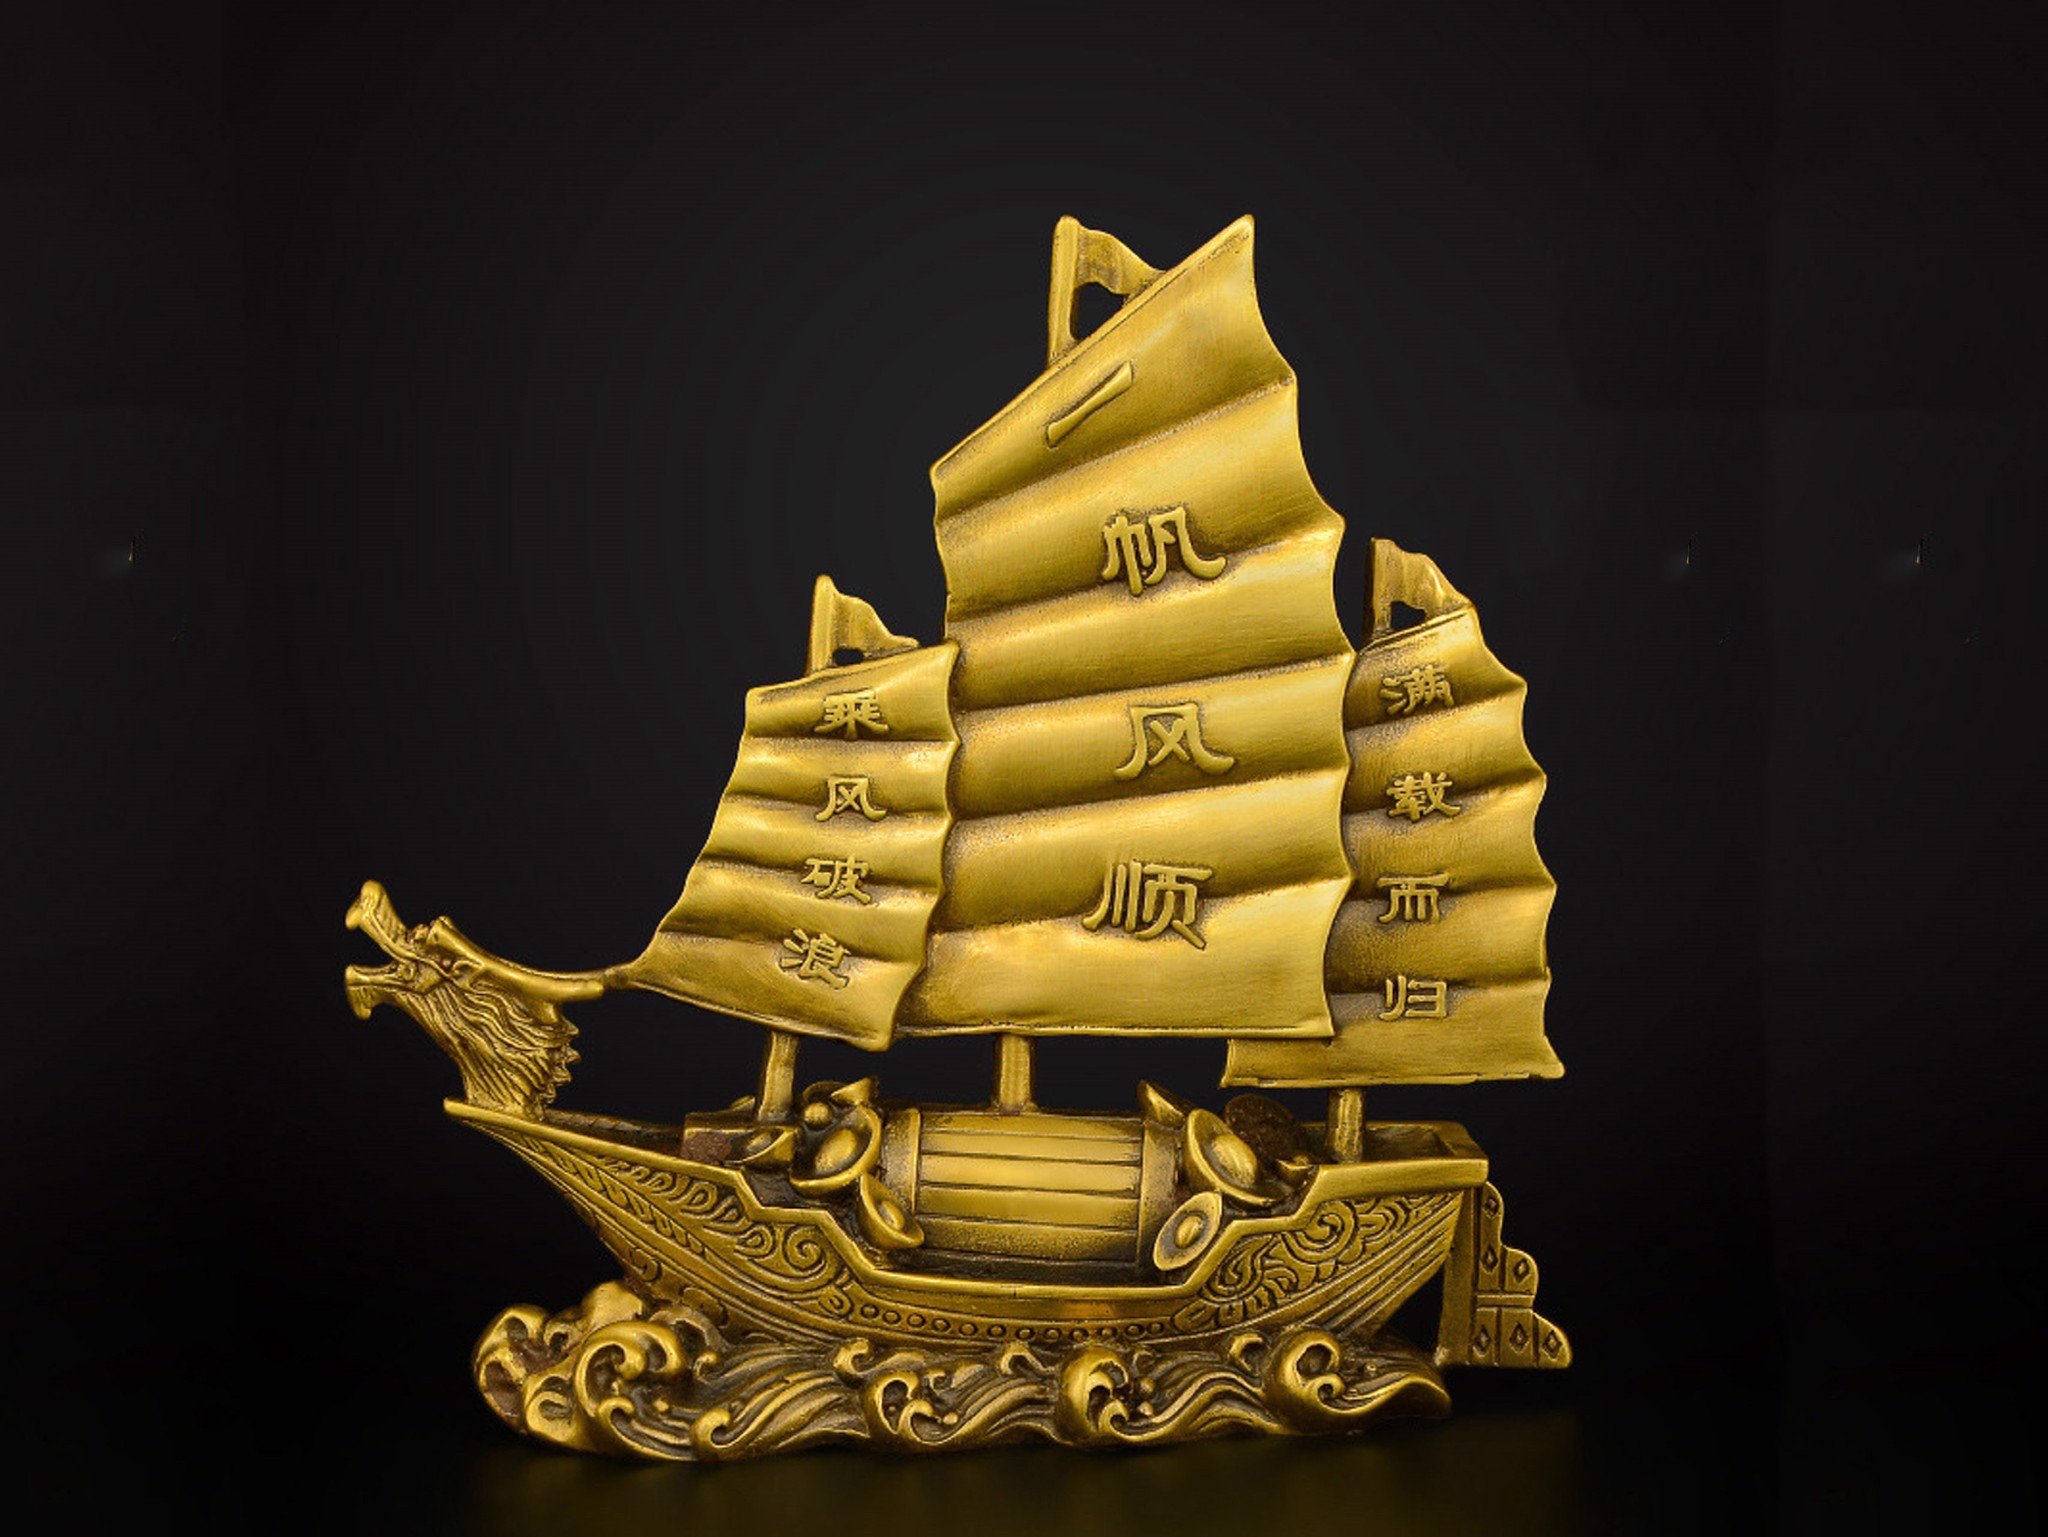 thuyền buồm phong thủy vàng